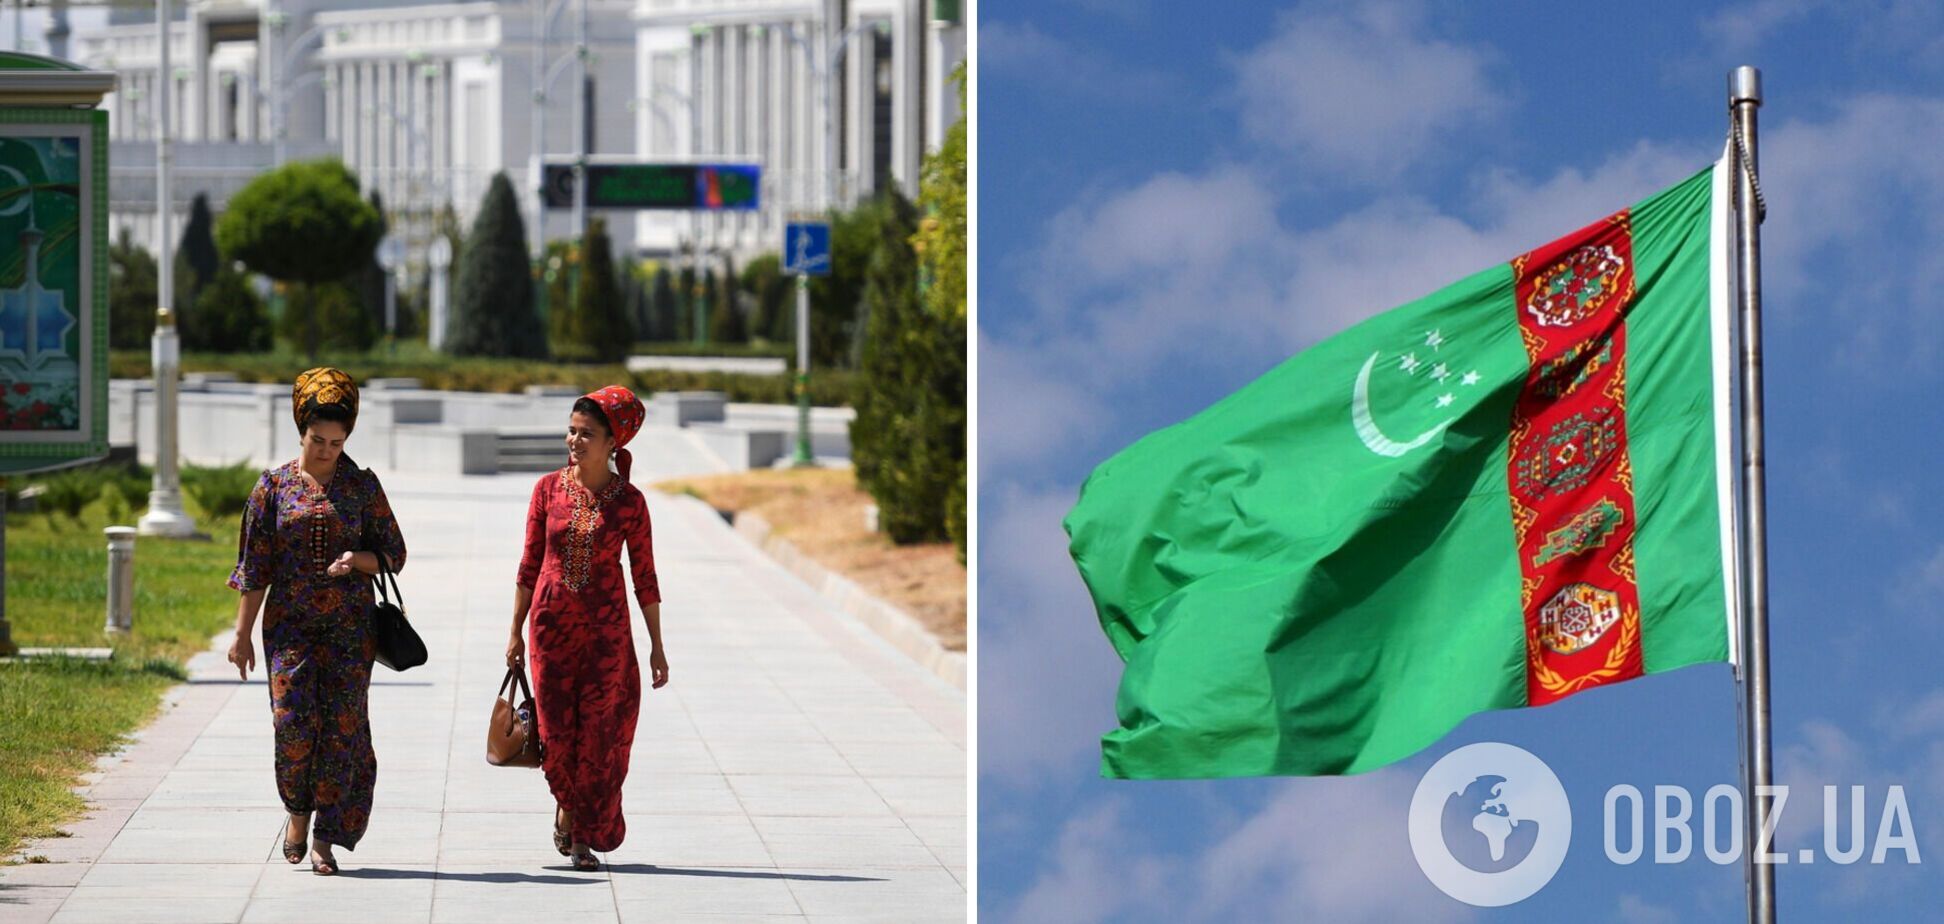 Под запретом увеличеные губы, маникюр и поездки на переднем сиденье: в Туркменистане ввели новые 'законы' для женщин